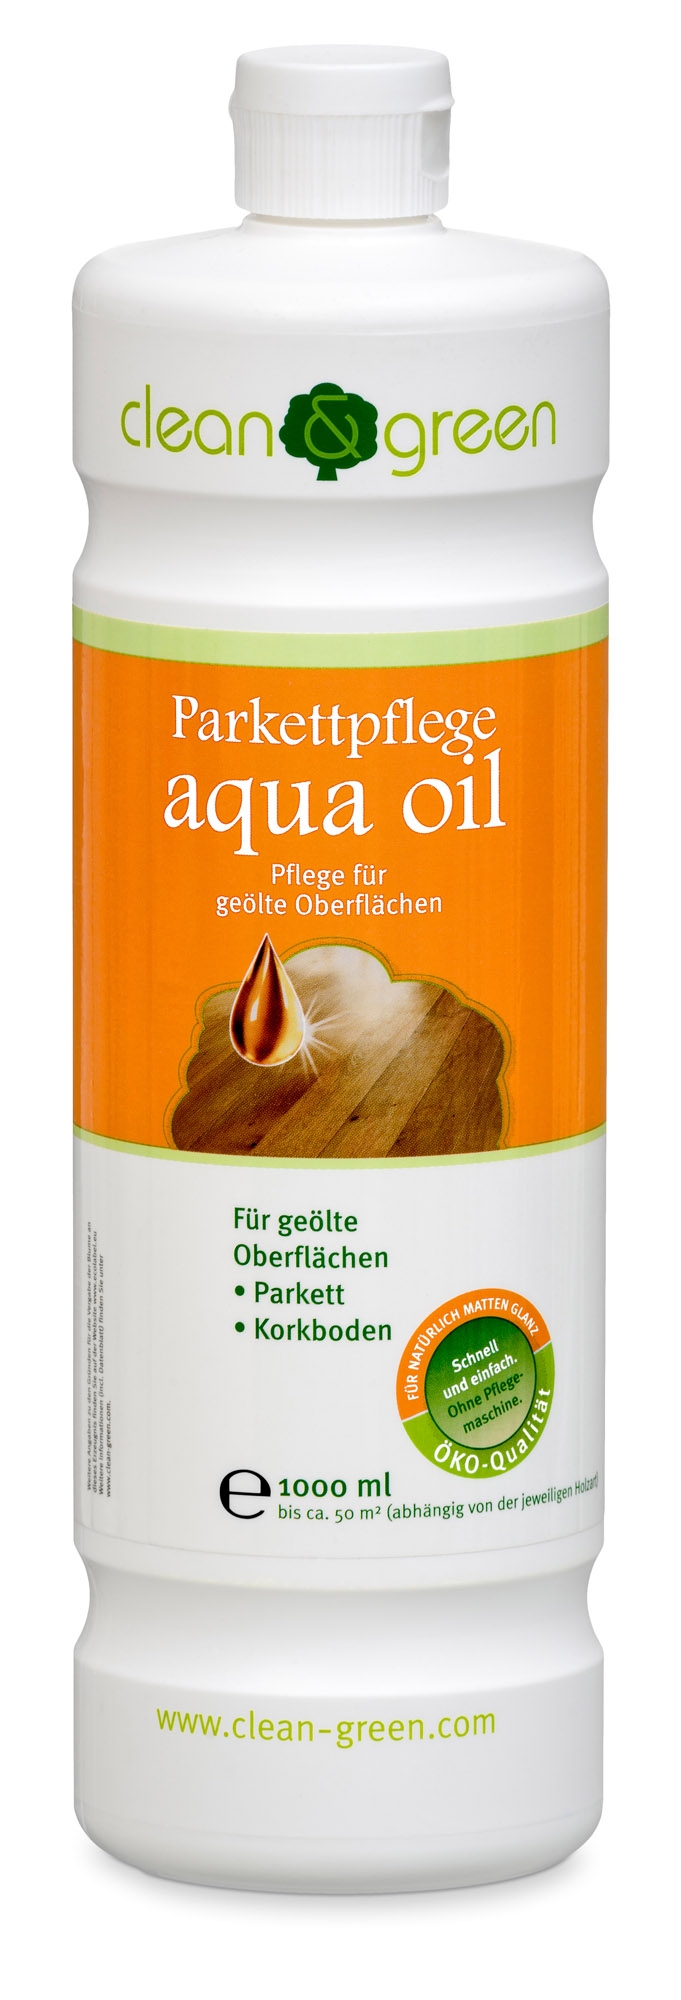 clean & green aqua oil